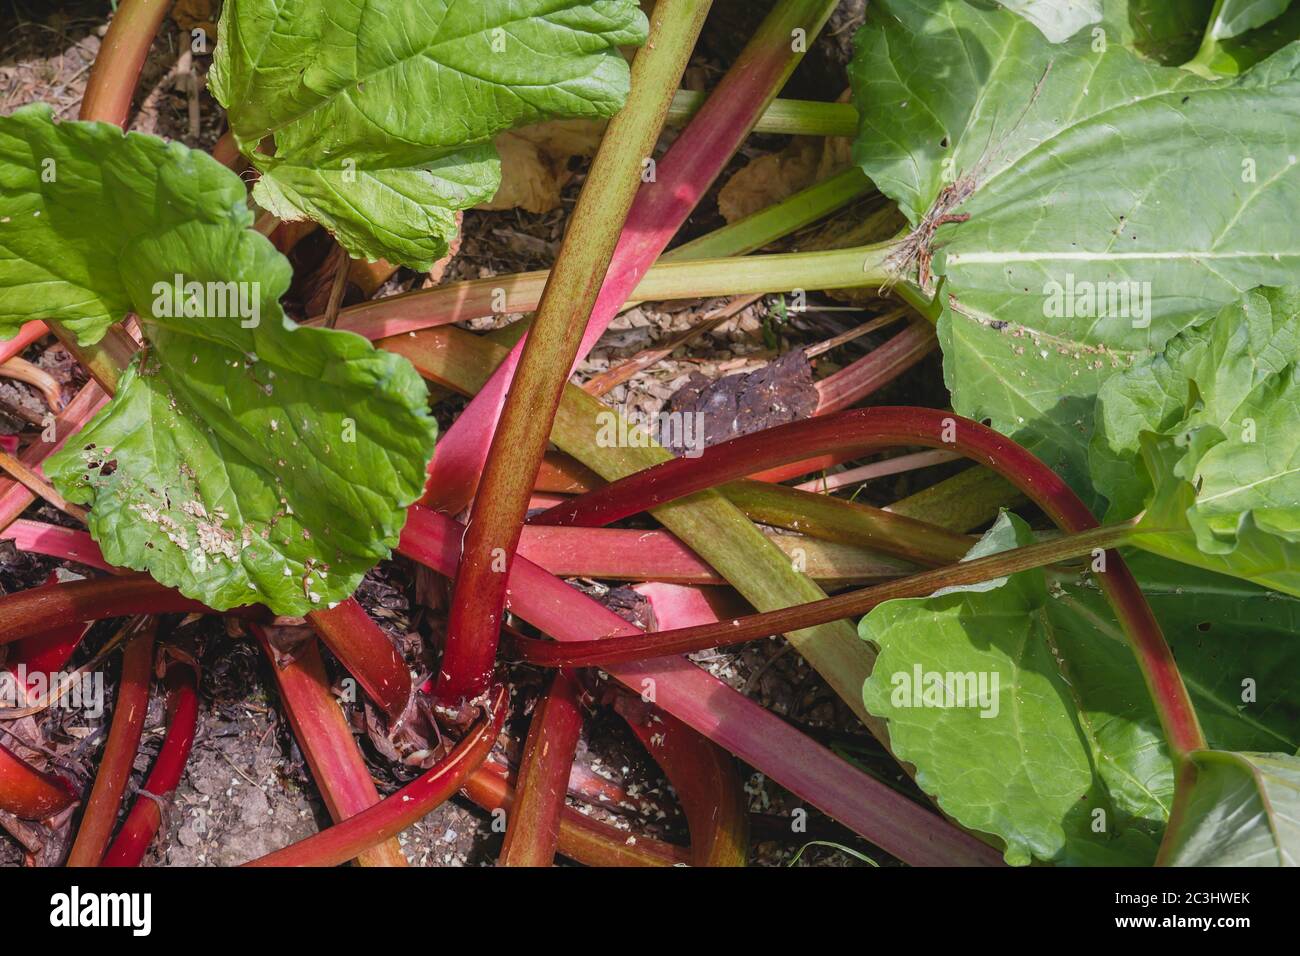 Rhabarber Pflanzen mit grünen Blättern und roten Stielen Stockfoto